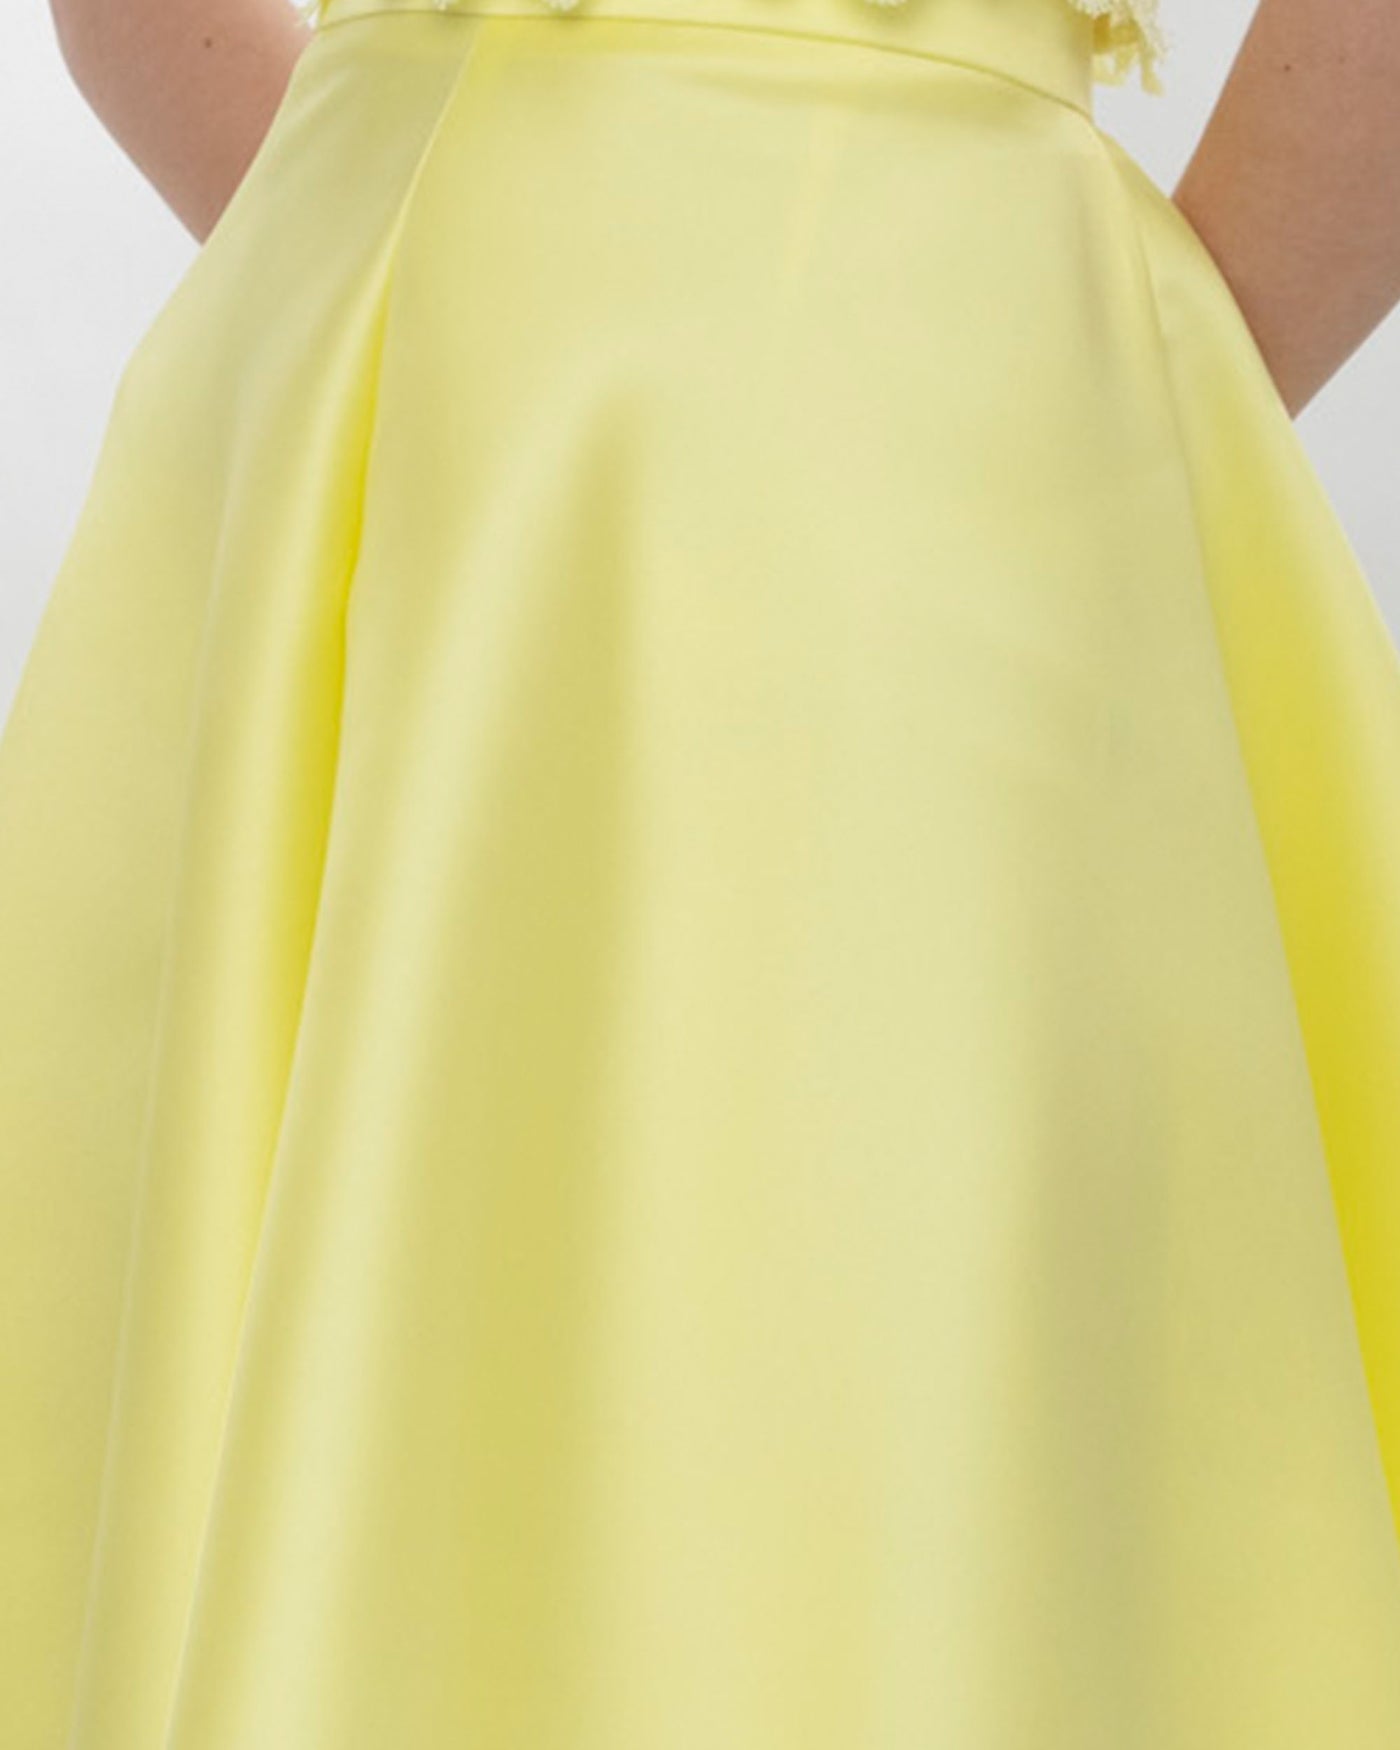 Mikado Yellow Skirt